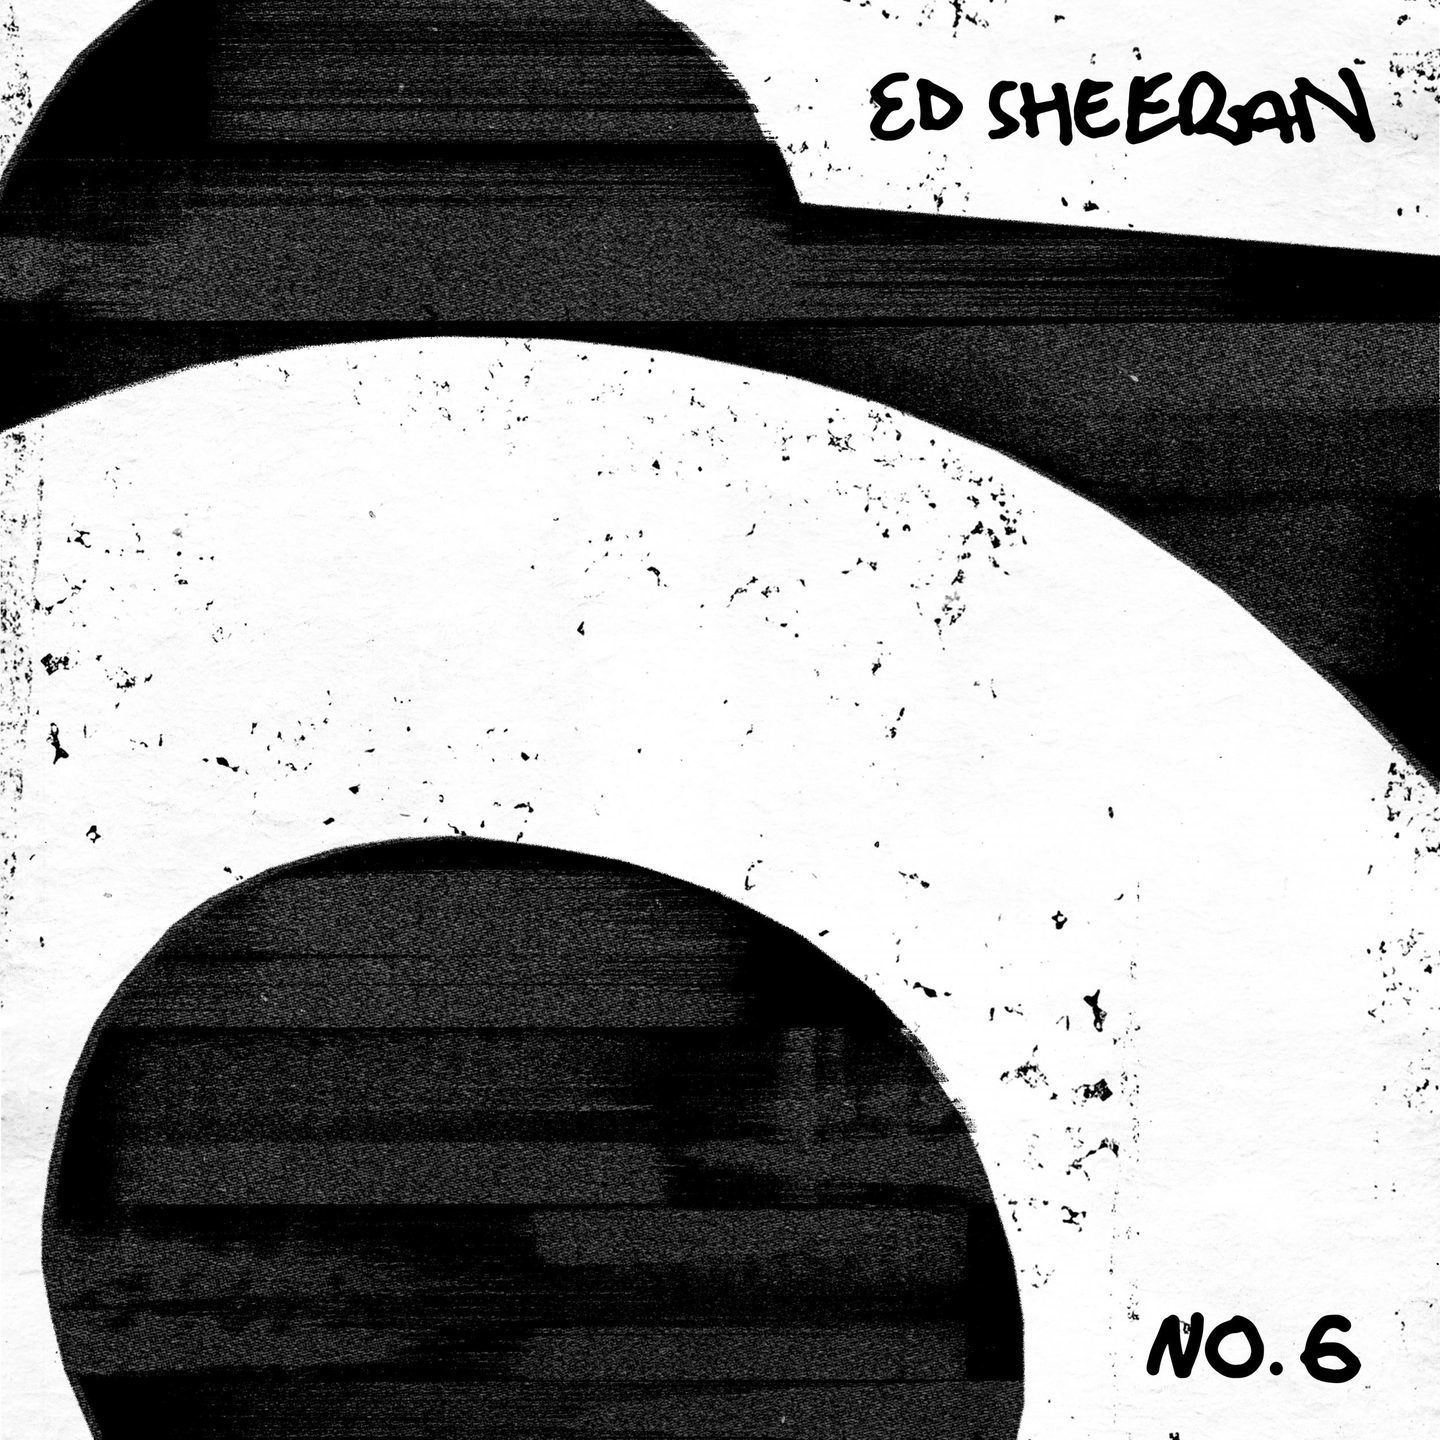 ED SHEERAN - No. 6 Collaborations Project 2xLP (180g Vinyl)